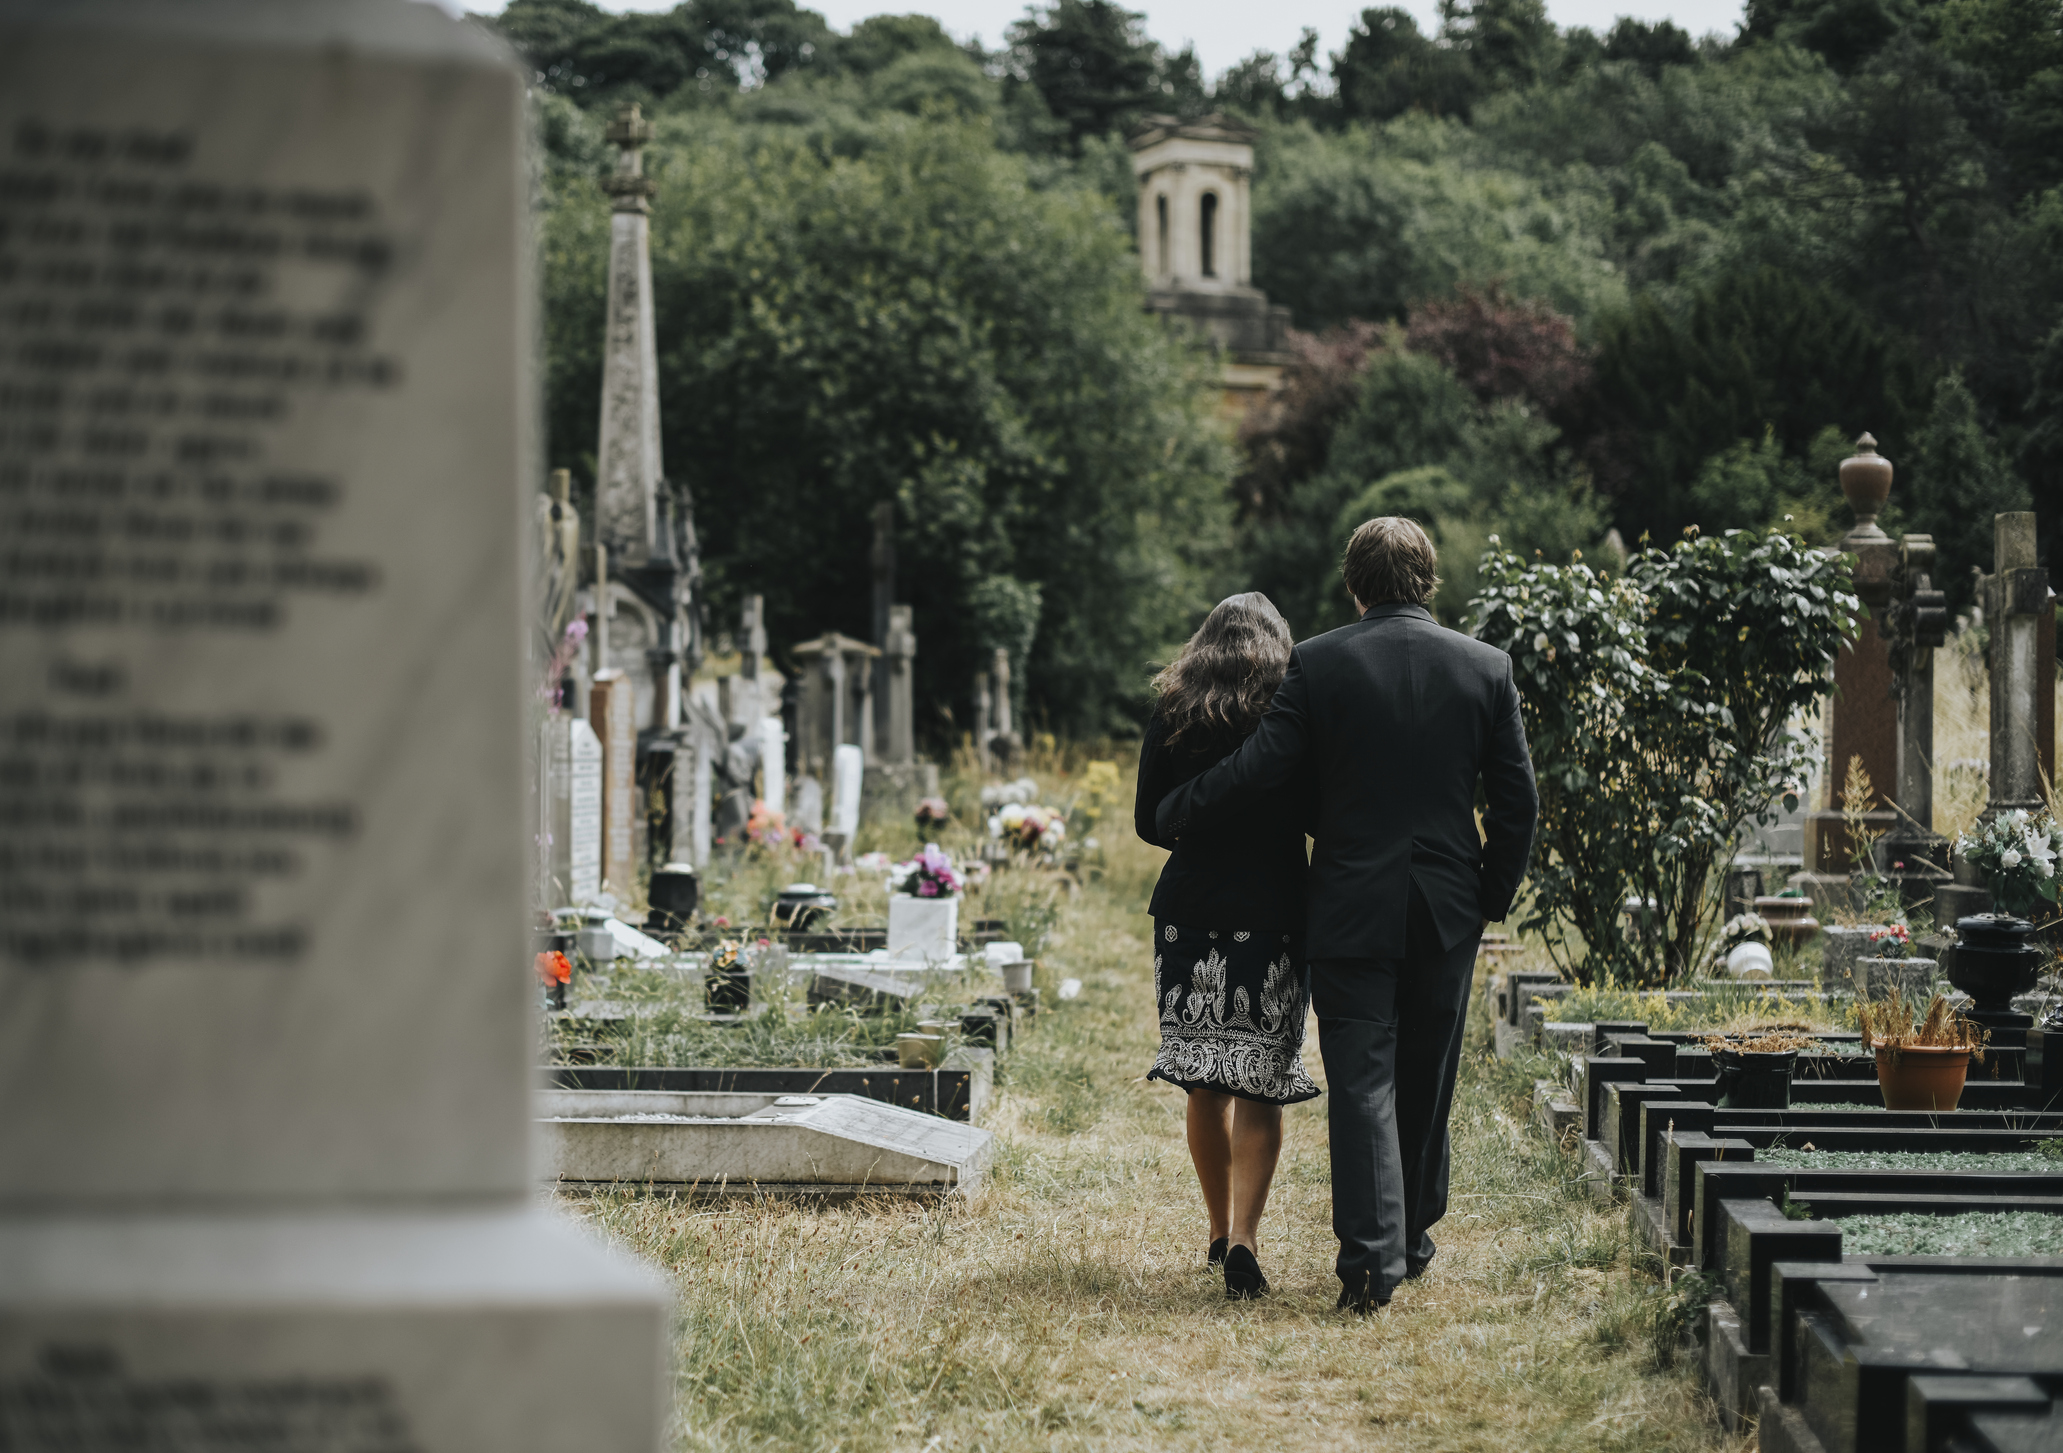 Meg kell-e bocsájtanunk a halott szüleinknek? És, ha igen, hogyan?